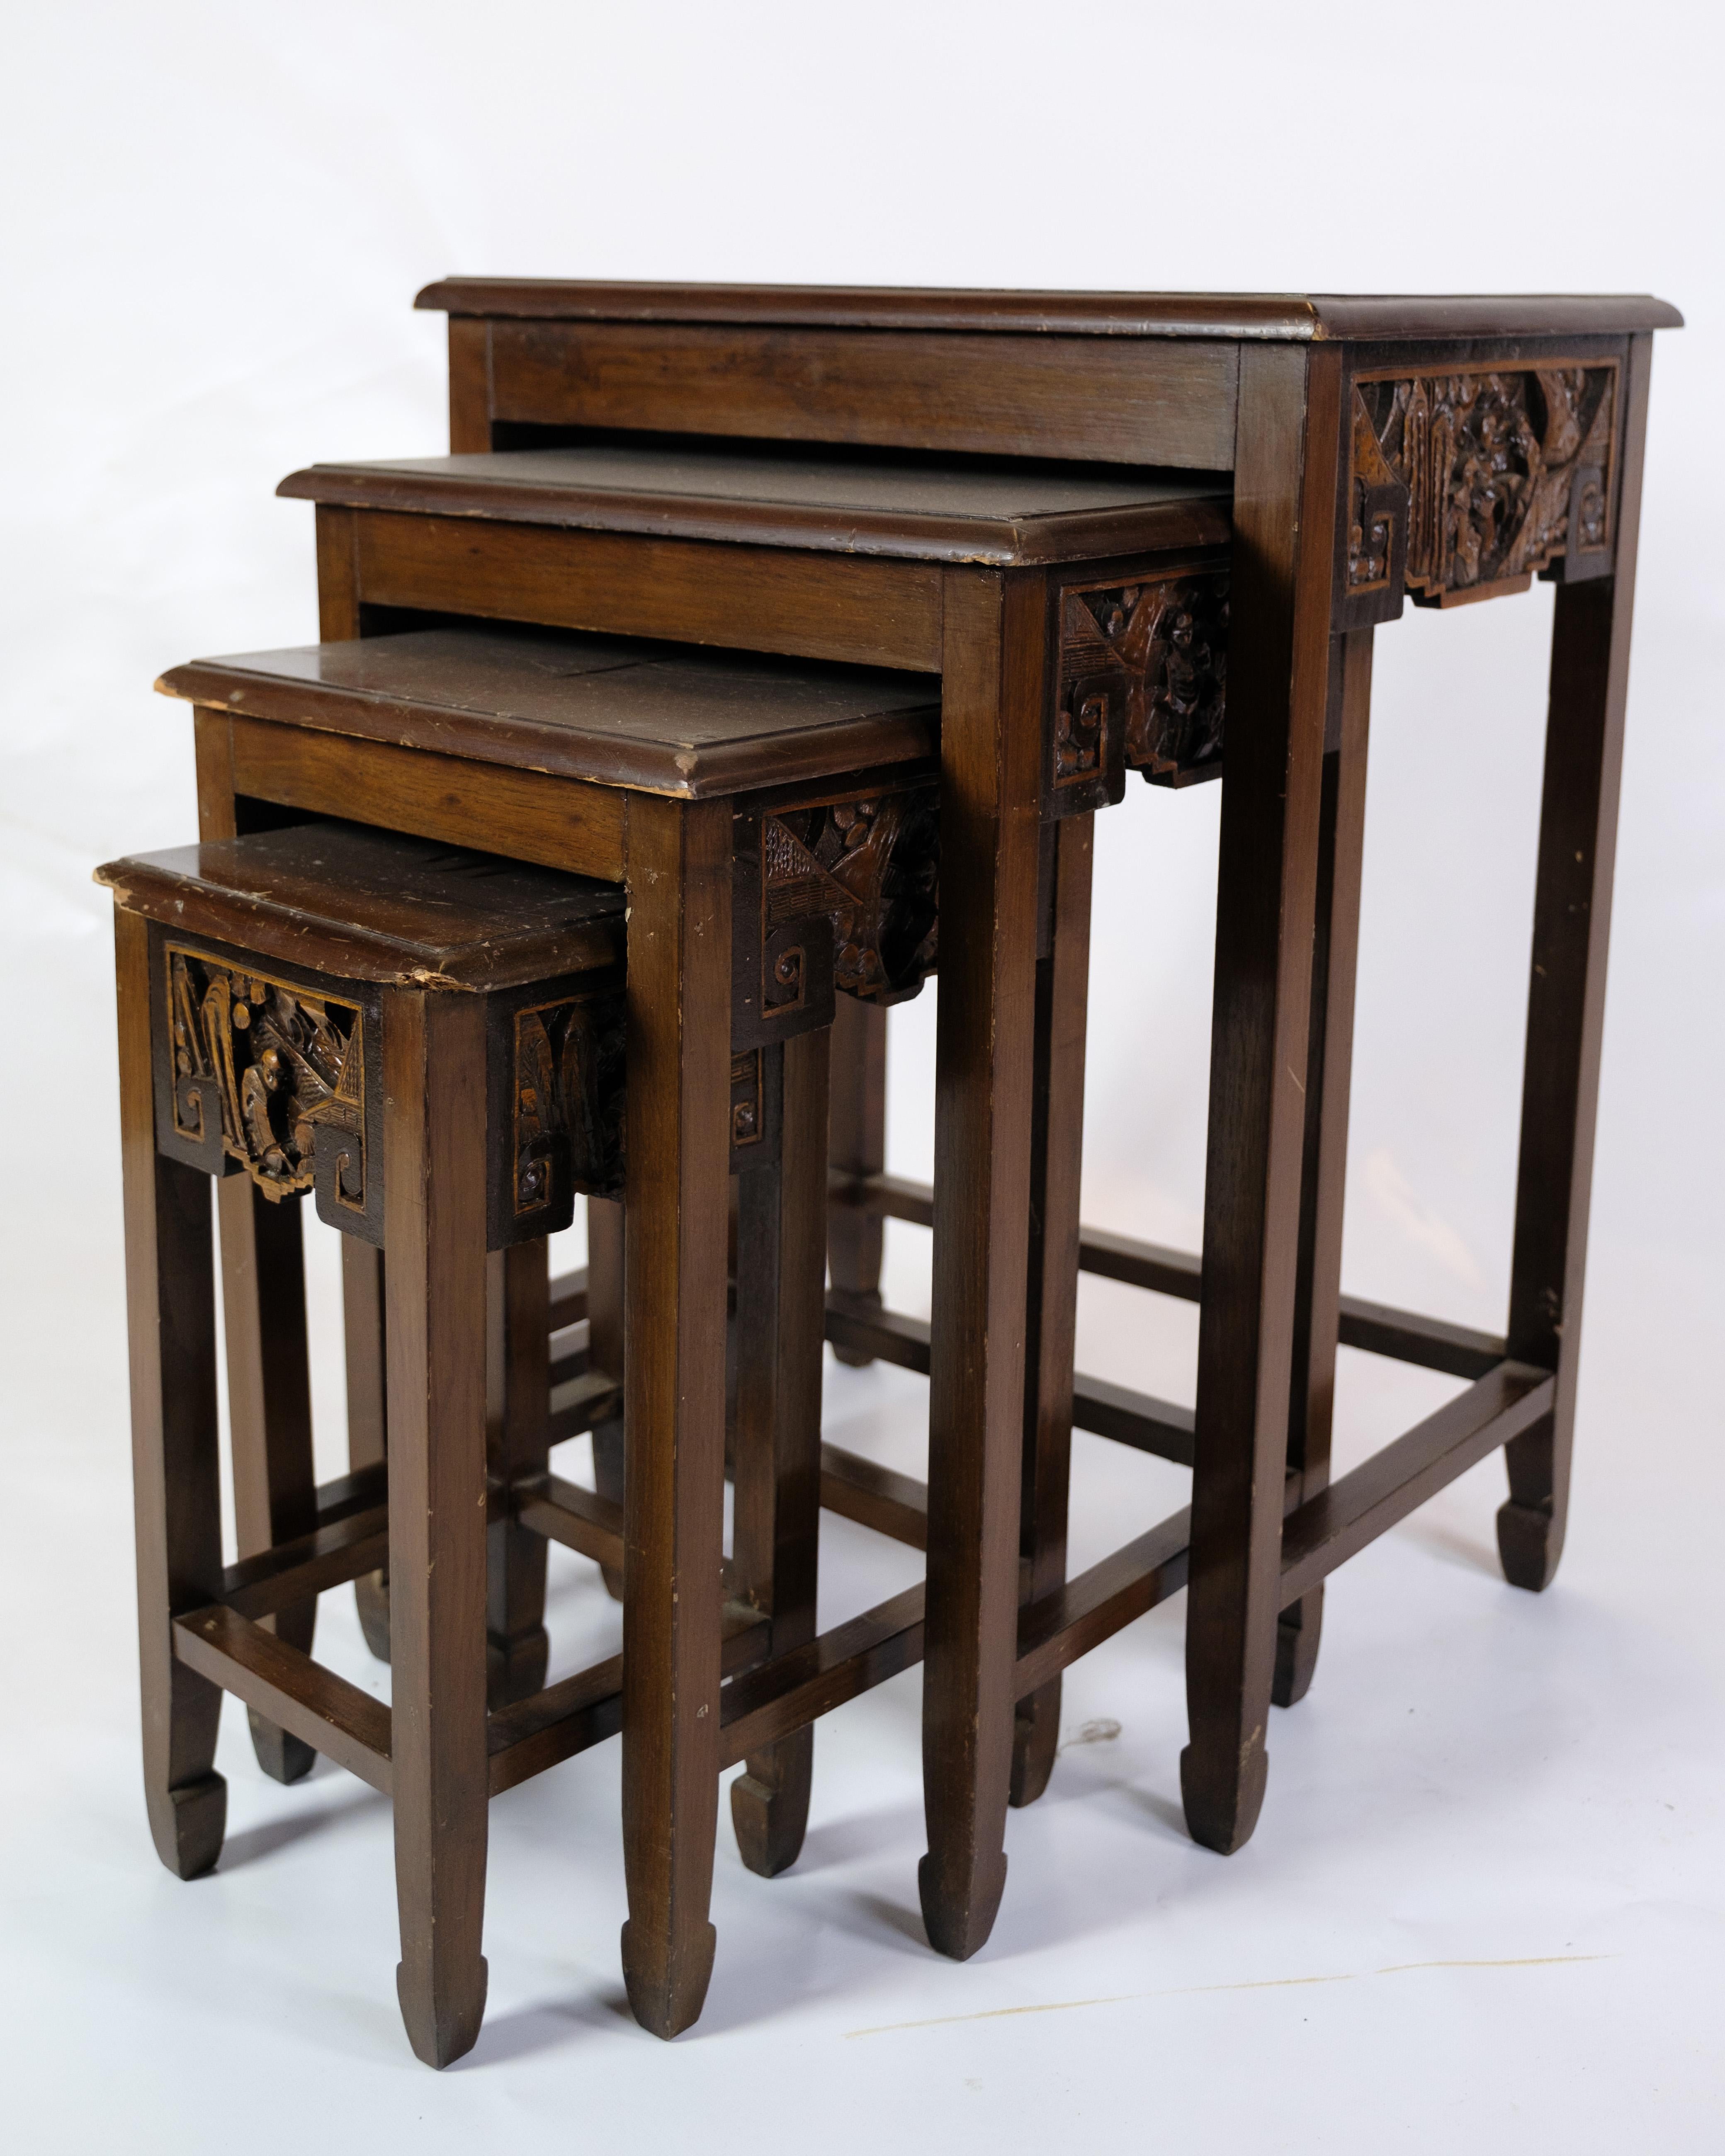 Ces quatre tables d'appoint/de chevet anciennes constituent une fascinante collection de meubles de style chinois des années 1930. Fabriquée en bois d'acajou, chaque table dégage une beauté et une élégance uniques qui enrichissent n'importe quelle